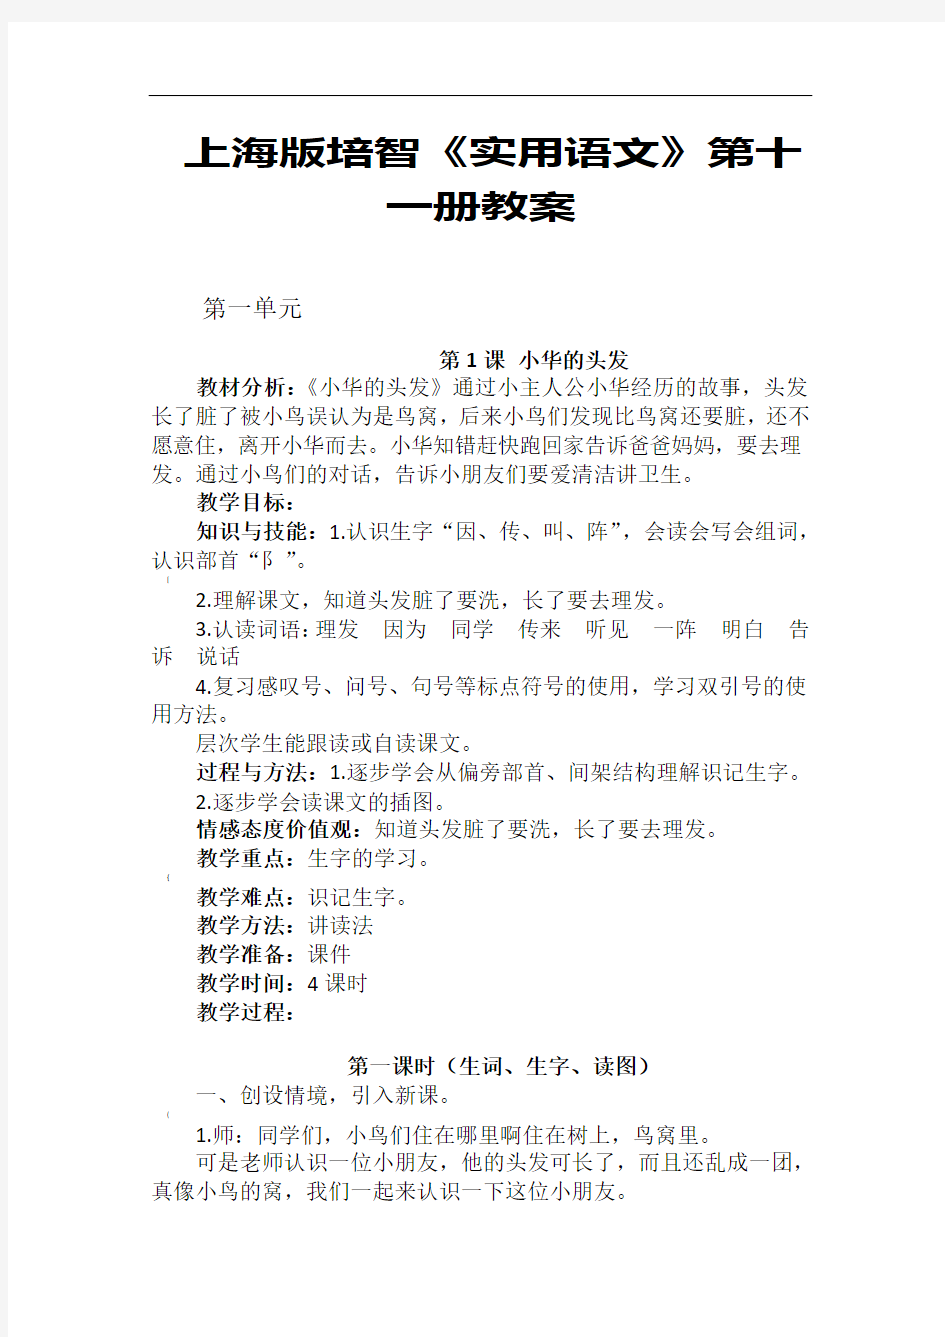 上海版培智实用语文第11册教案第一单元